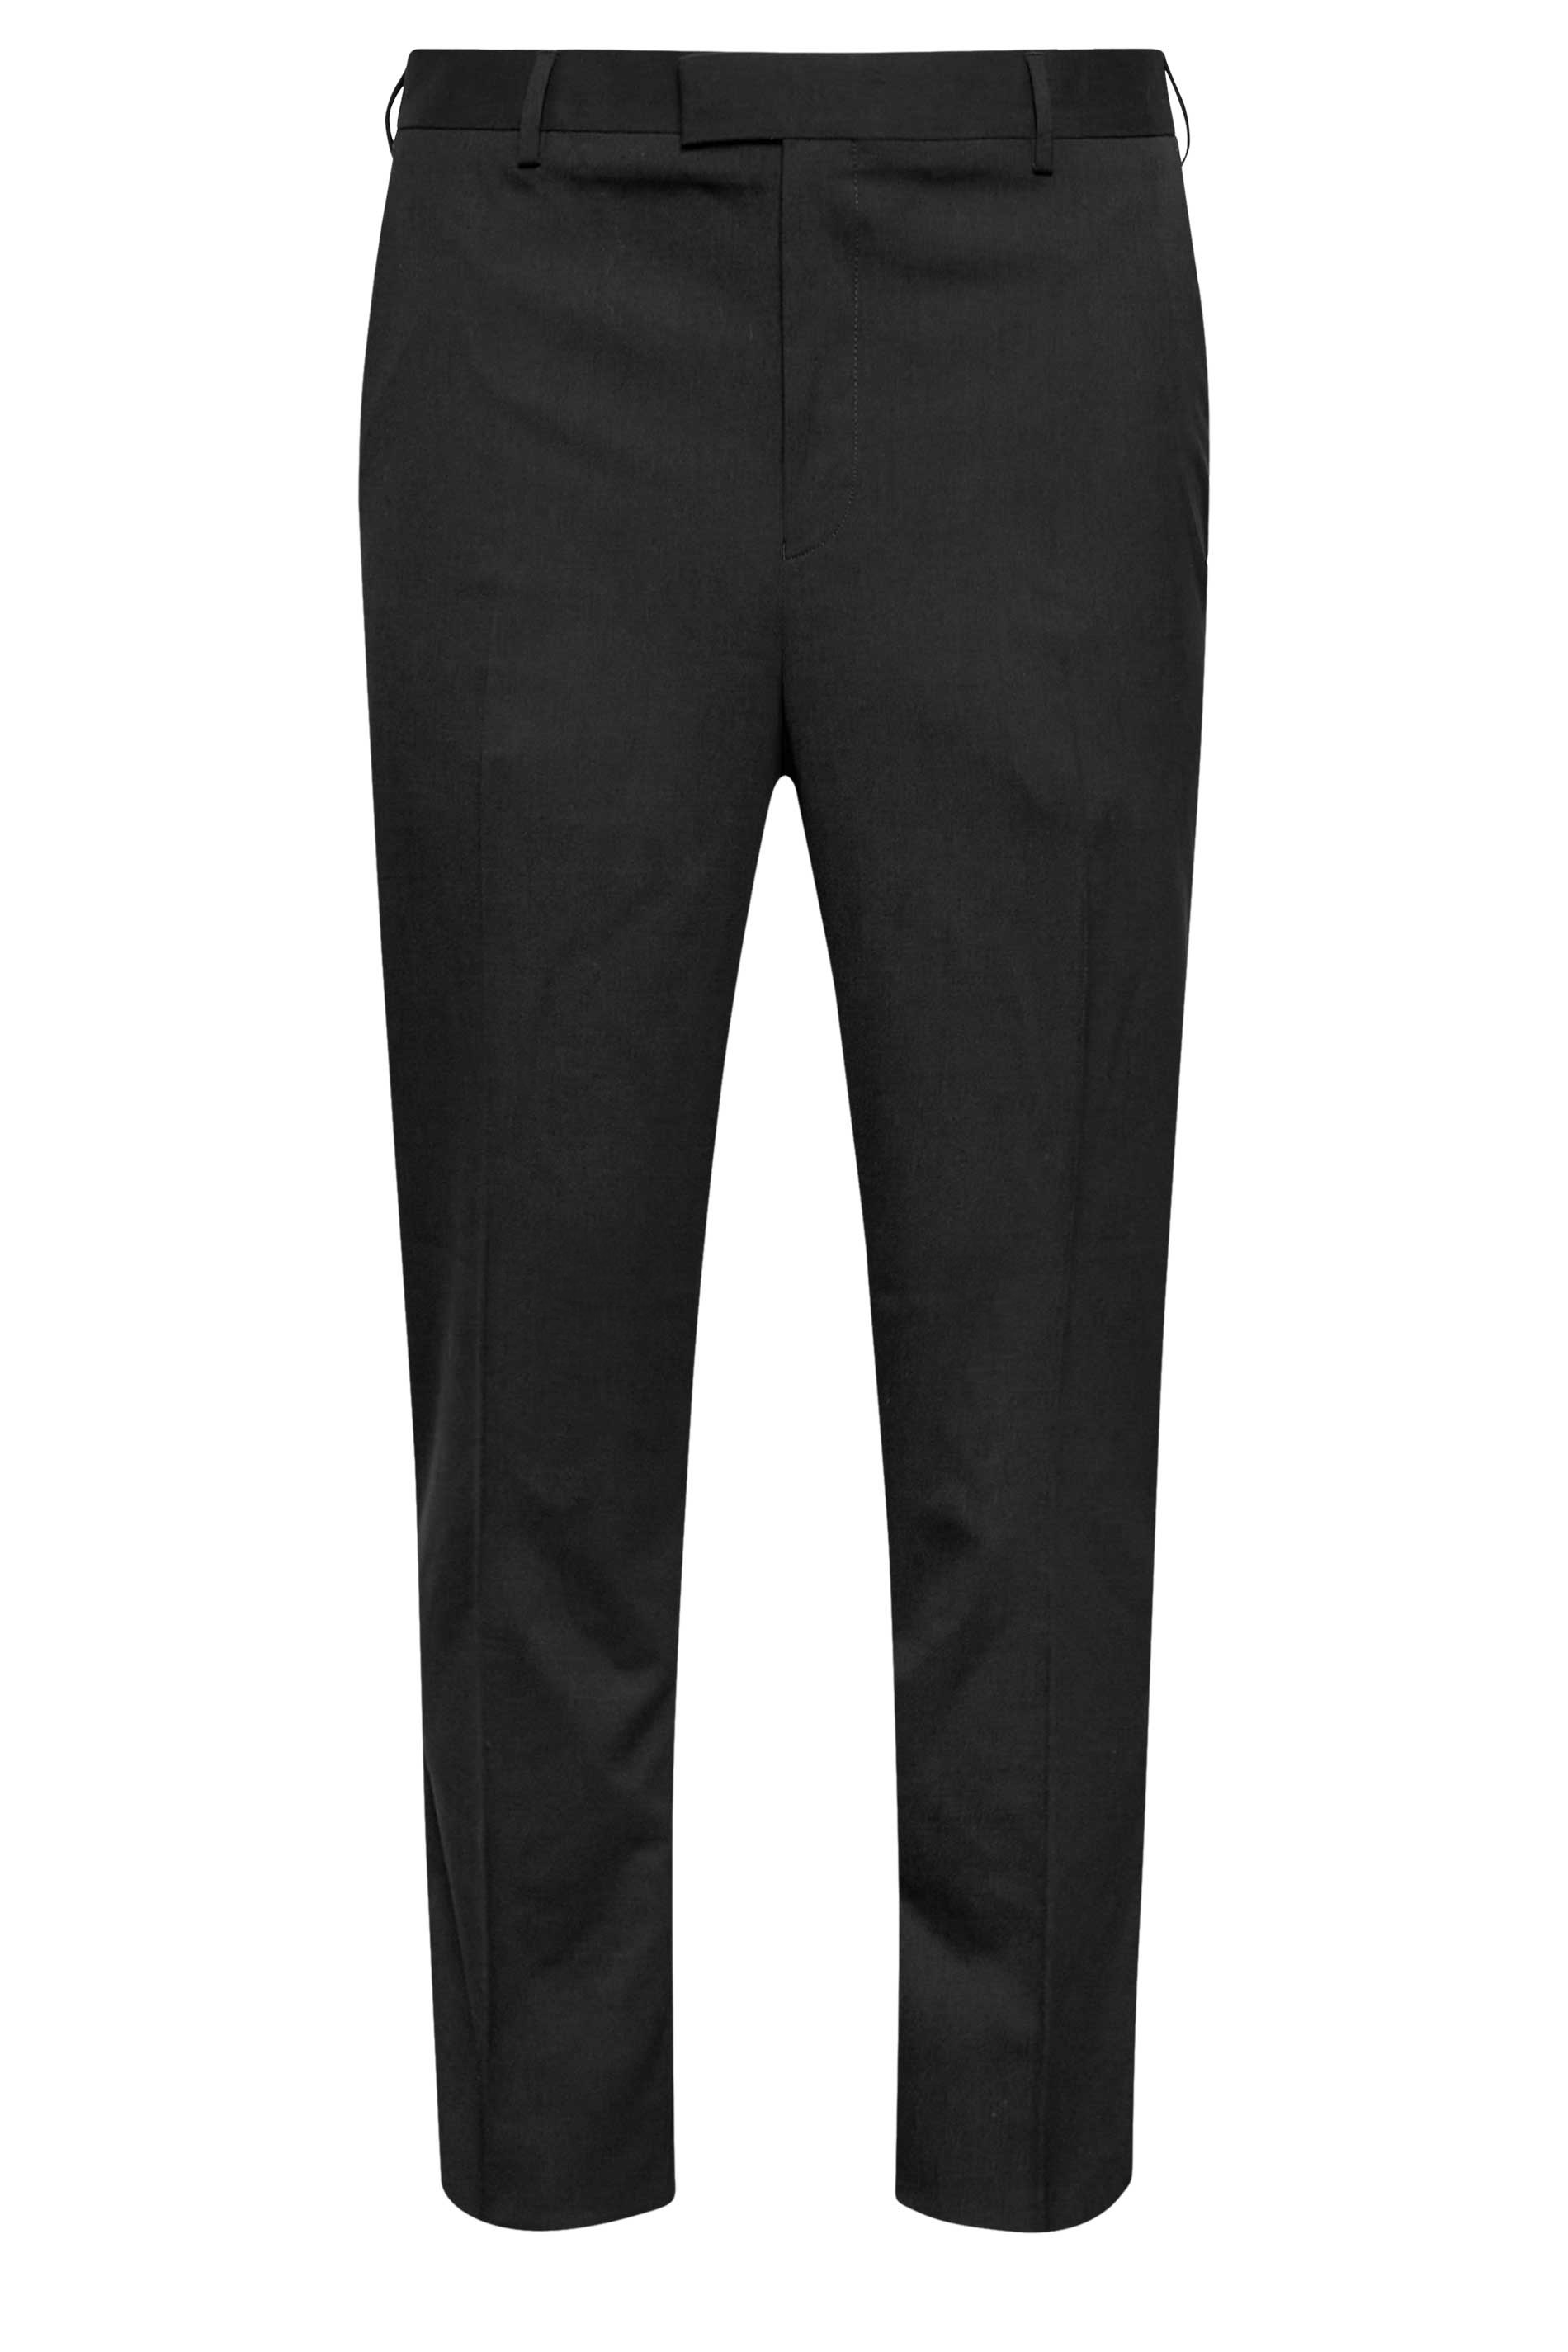 BadRhino Black Plain Suit Trousers | BadRhino